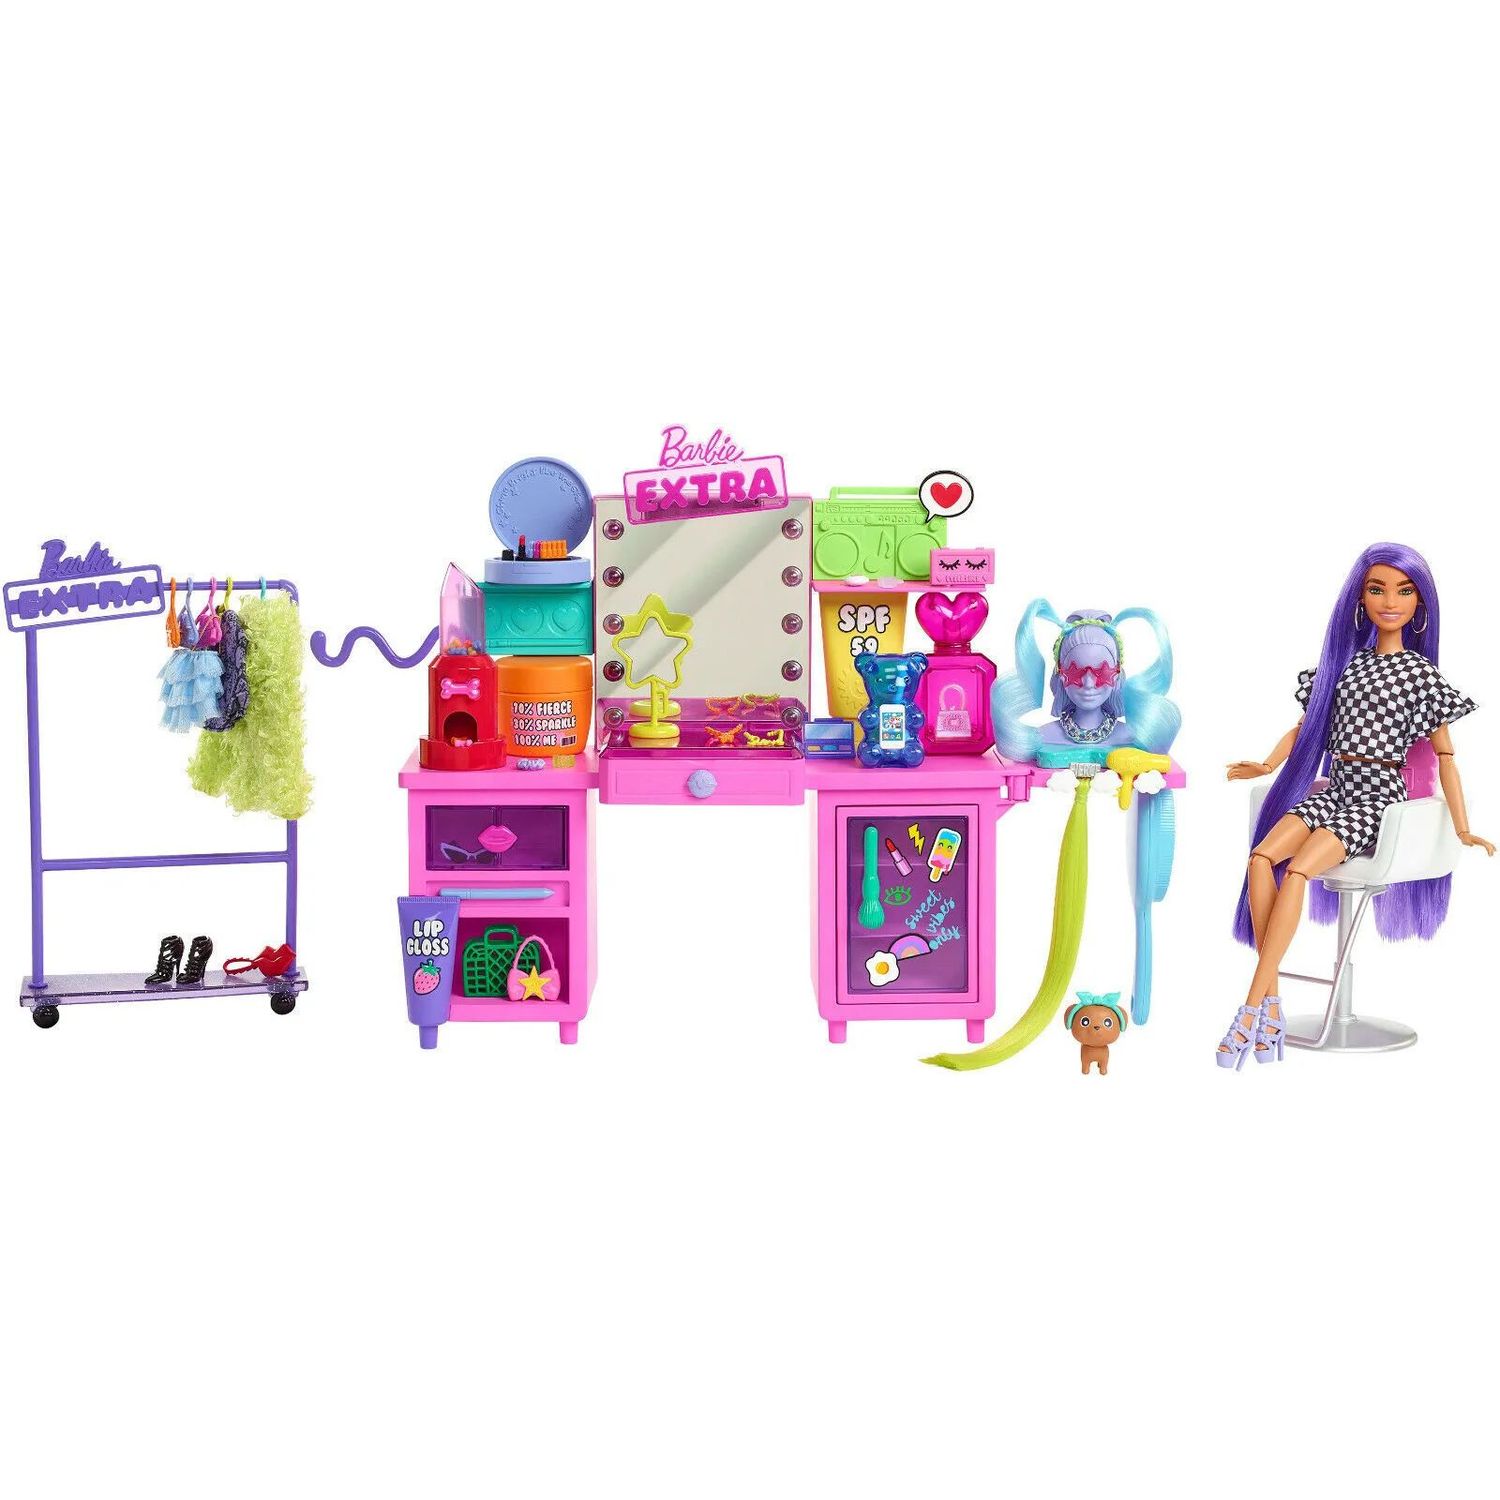 Игровой набор Barbie Екстра Визажный столик (GYJ70) - фото 1